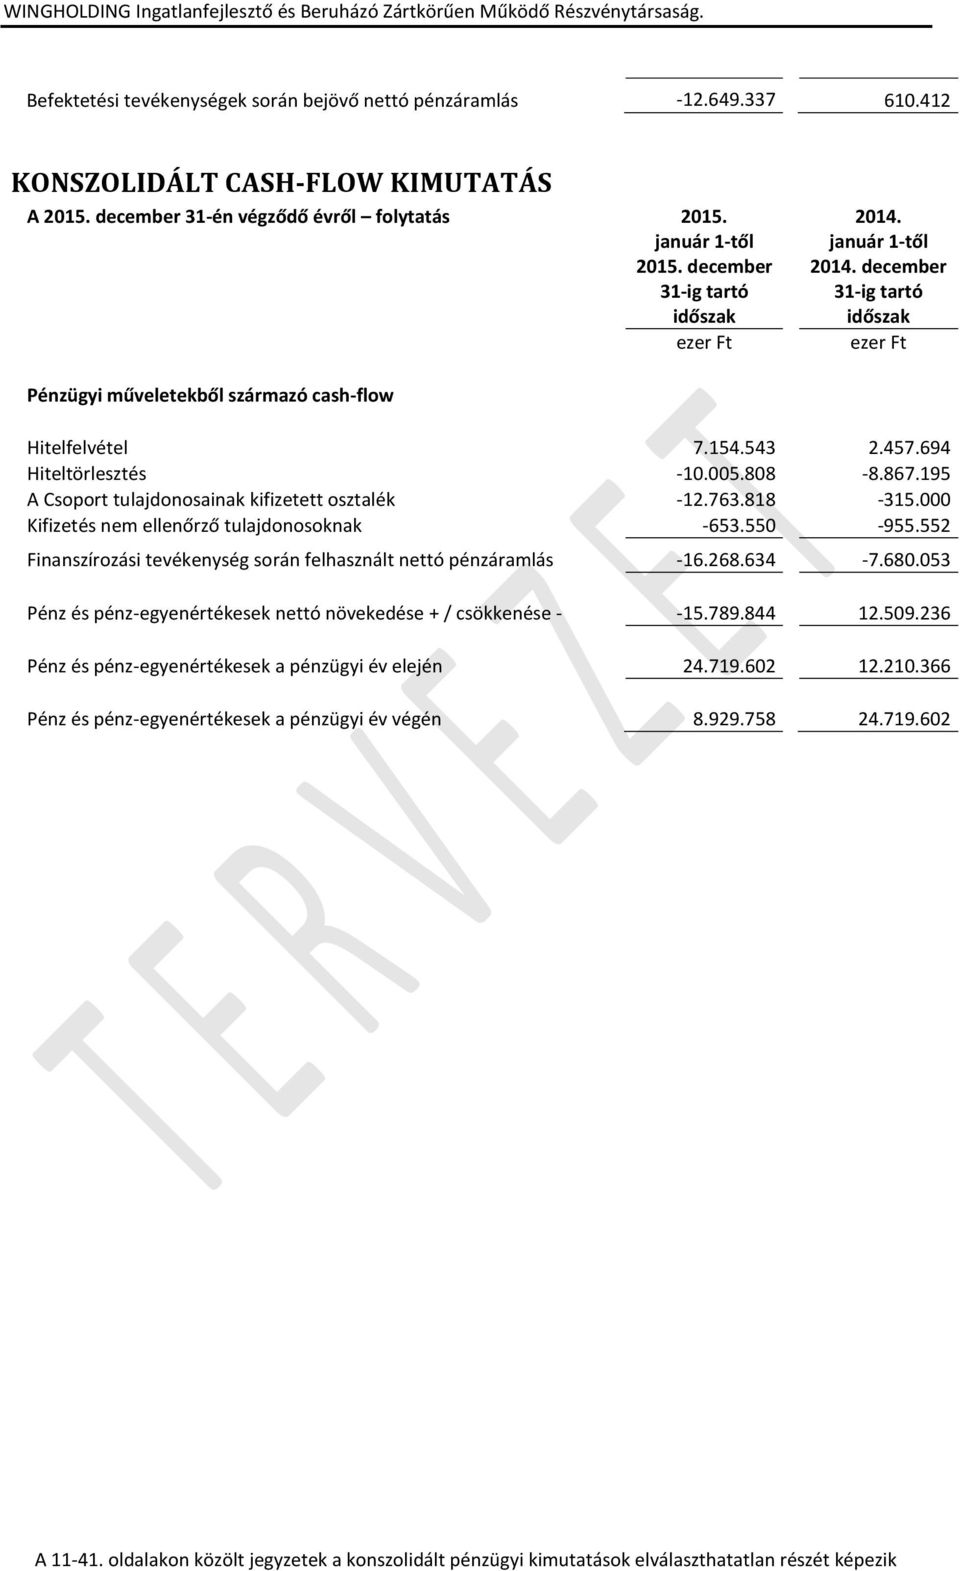 195 A Csoport tulajdonosainak kifizetett osztalék -12.763.818-315.000 Kifizetés nem ellenőrző tulajdonosoknak -653.550-955.552 Finanszírozási tevékenység során felhasznált nettó pénzáramlás -16.268.